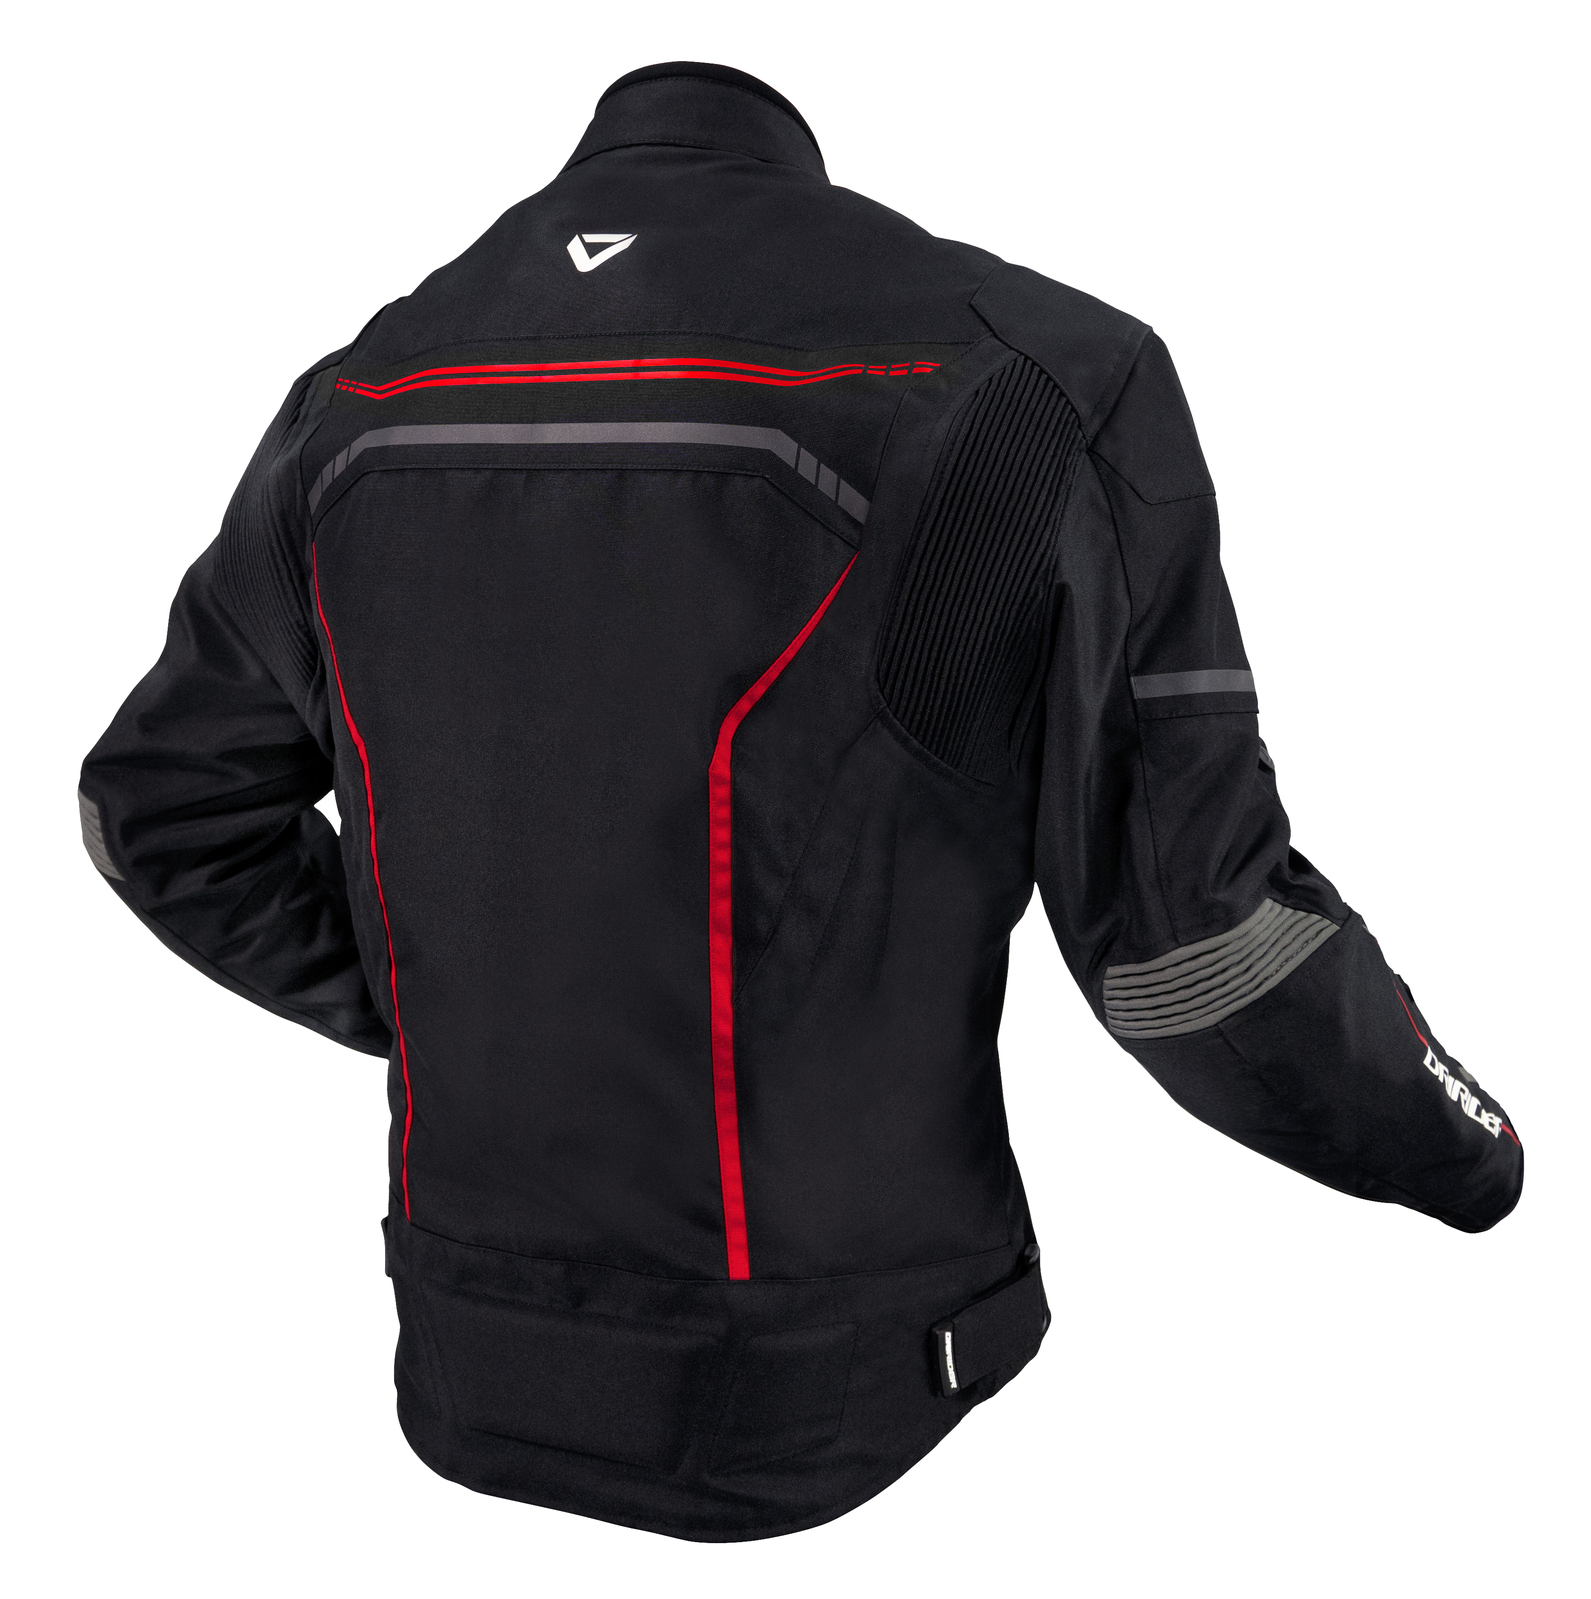 DriRider Origin Black/Red Textile Jacket